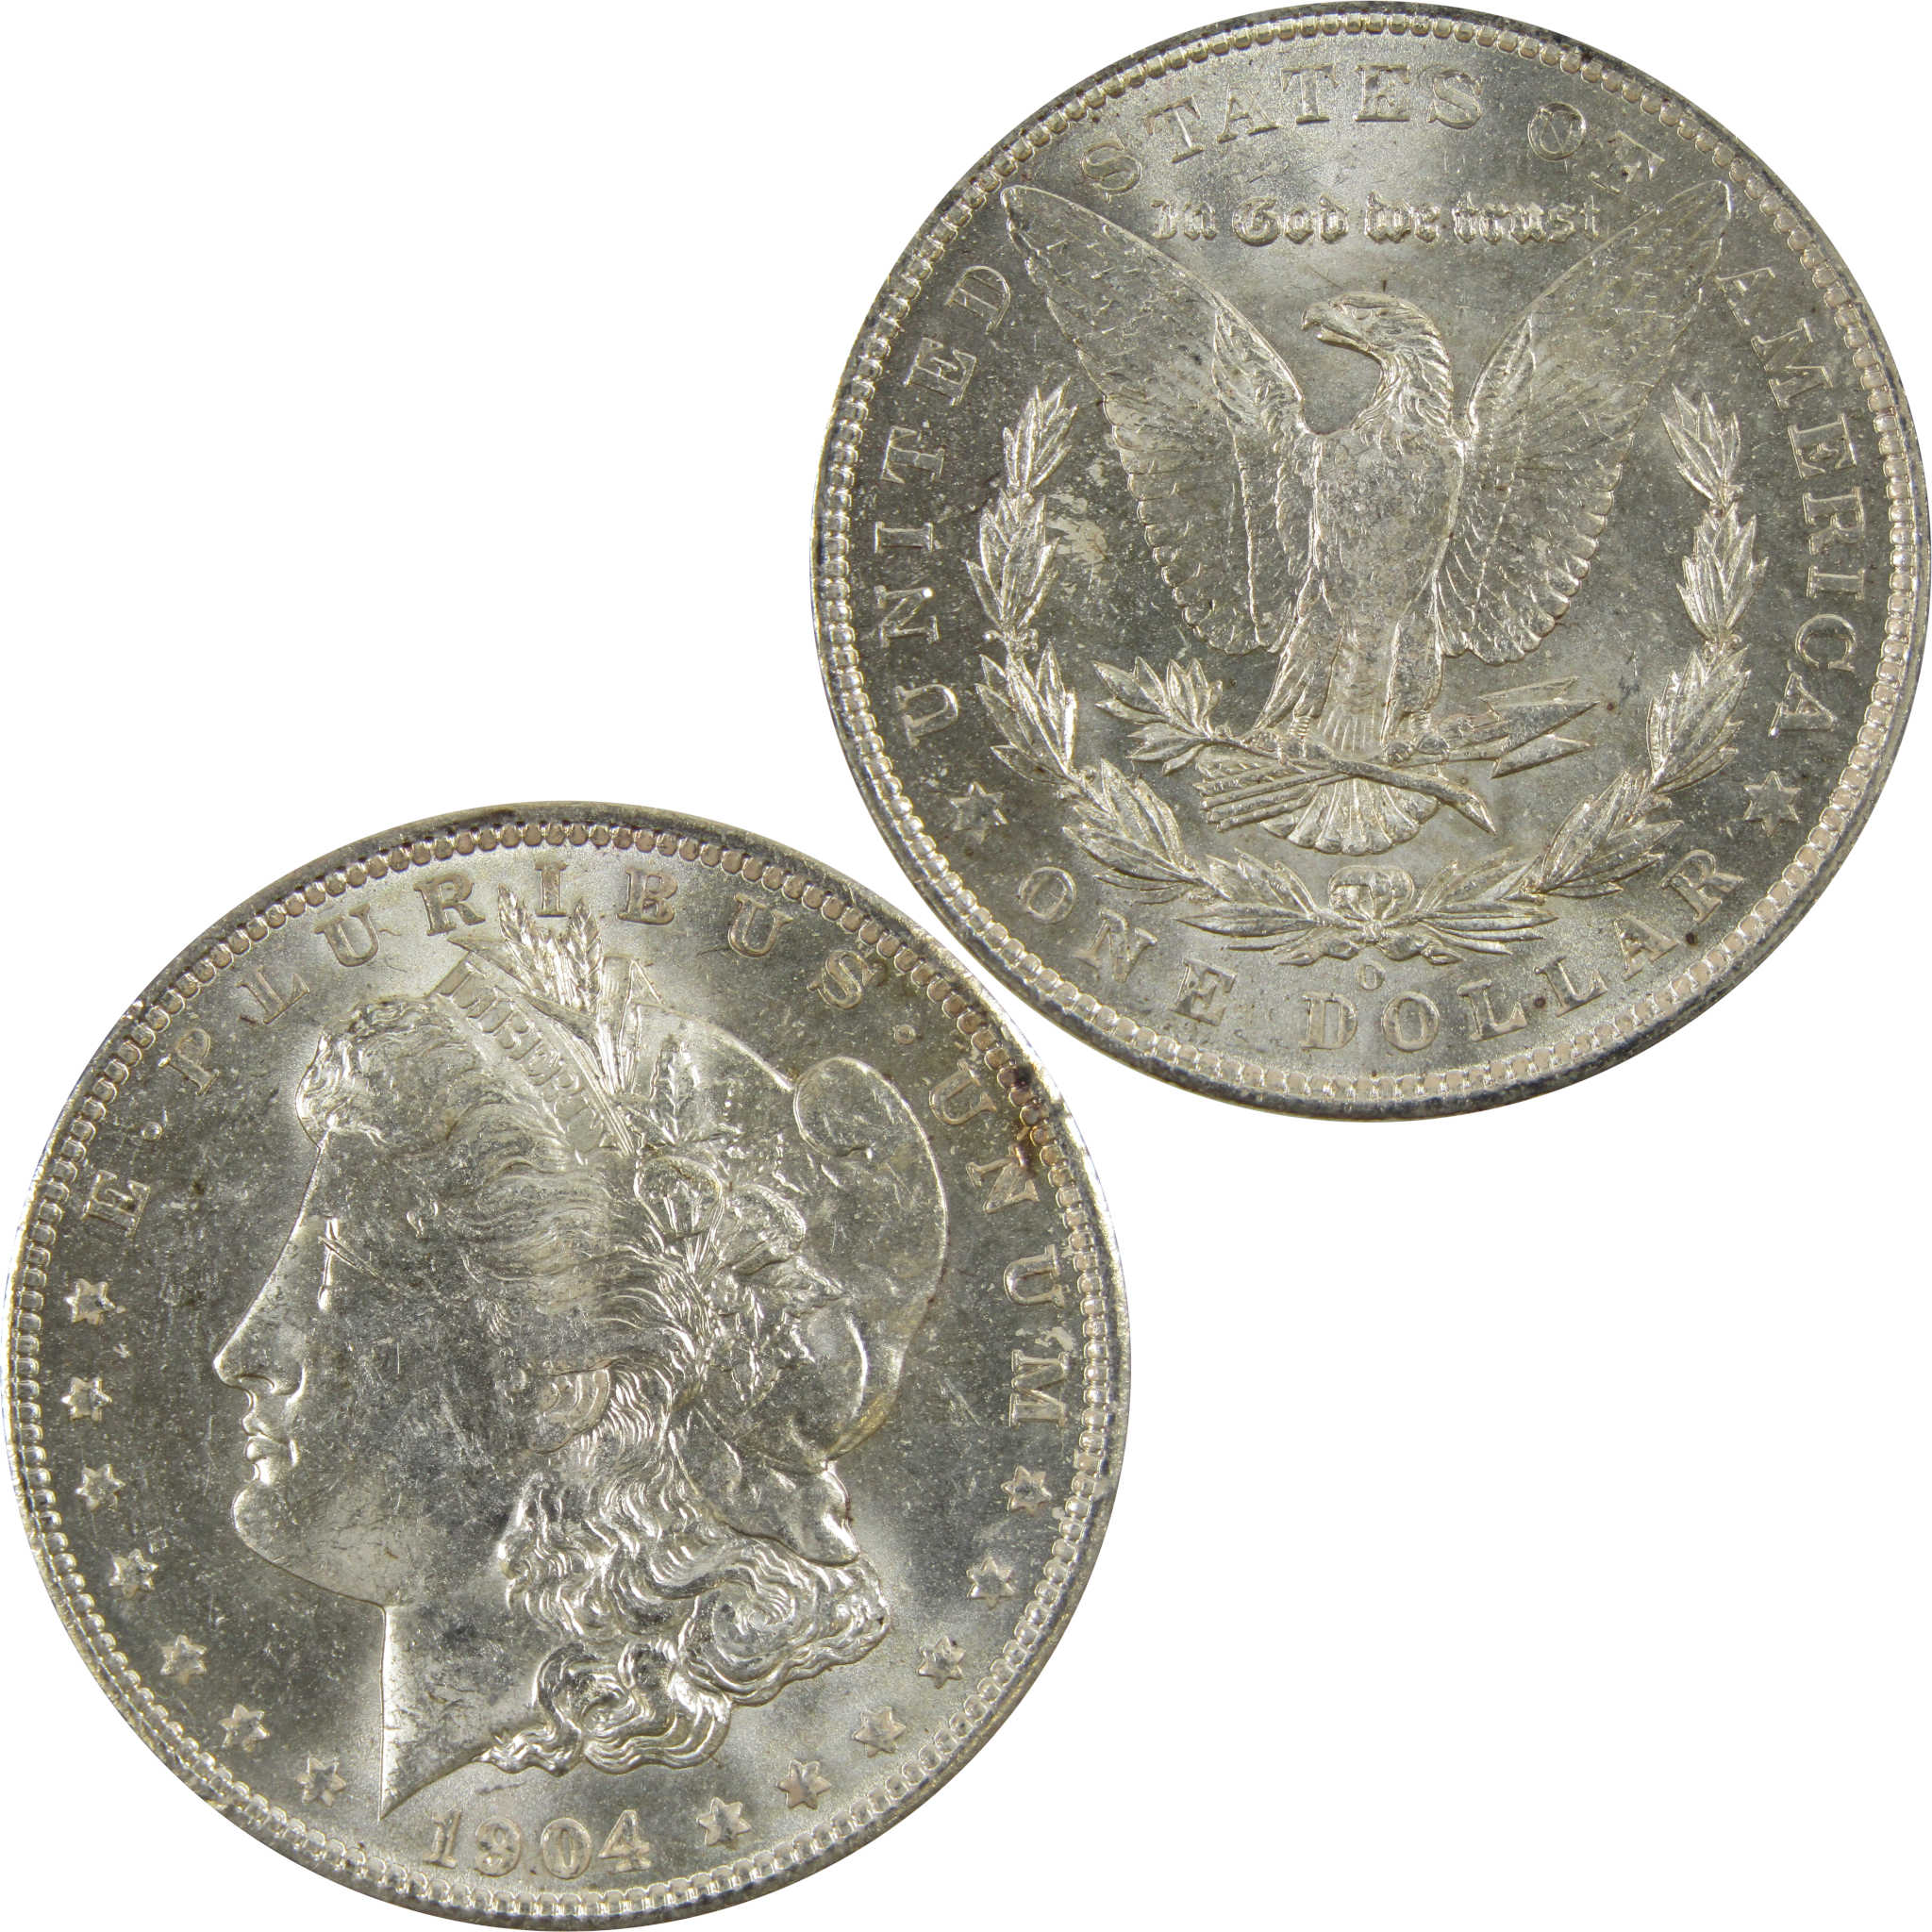 1904 O Morgan Dollar BU Uncirculated 90% Silver $1 Coin SKU:I5227 - Morgan coin - Morgan silver dollar - Morgan silver dollar for sale - Profile Coins &amp; Collectibles